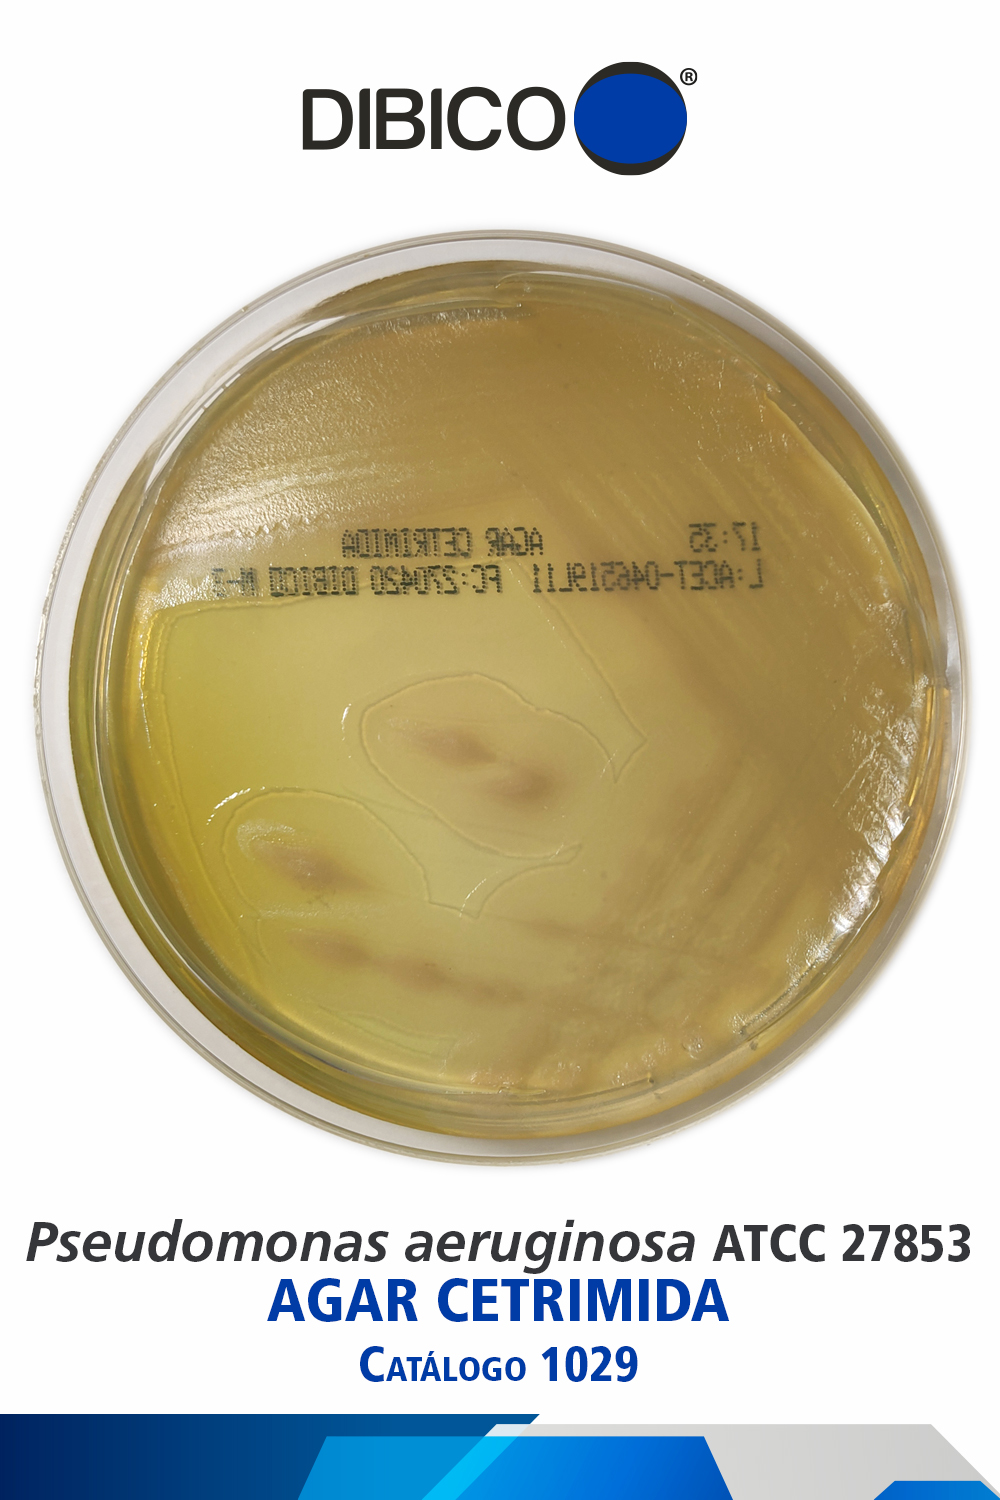 Pseudomonas aeruginosa ATCC 27853